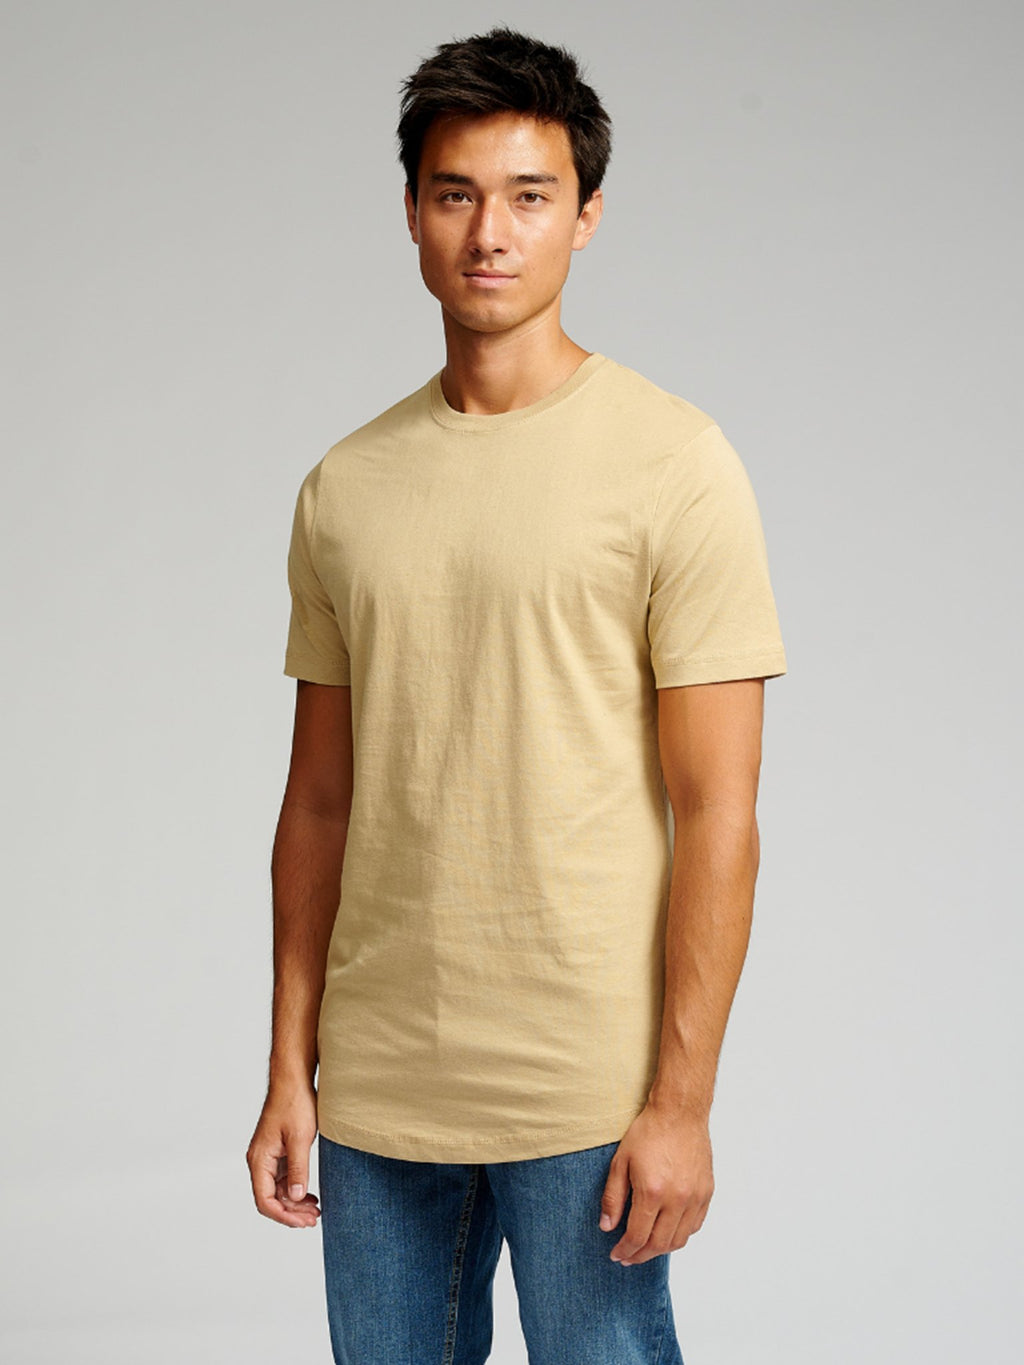 Camiseta larga - beige